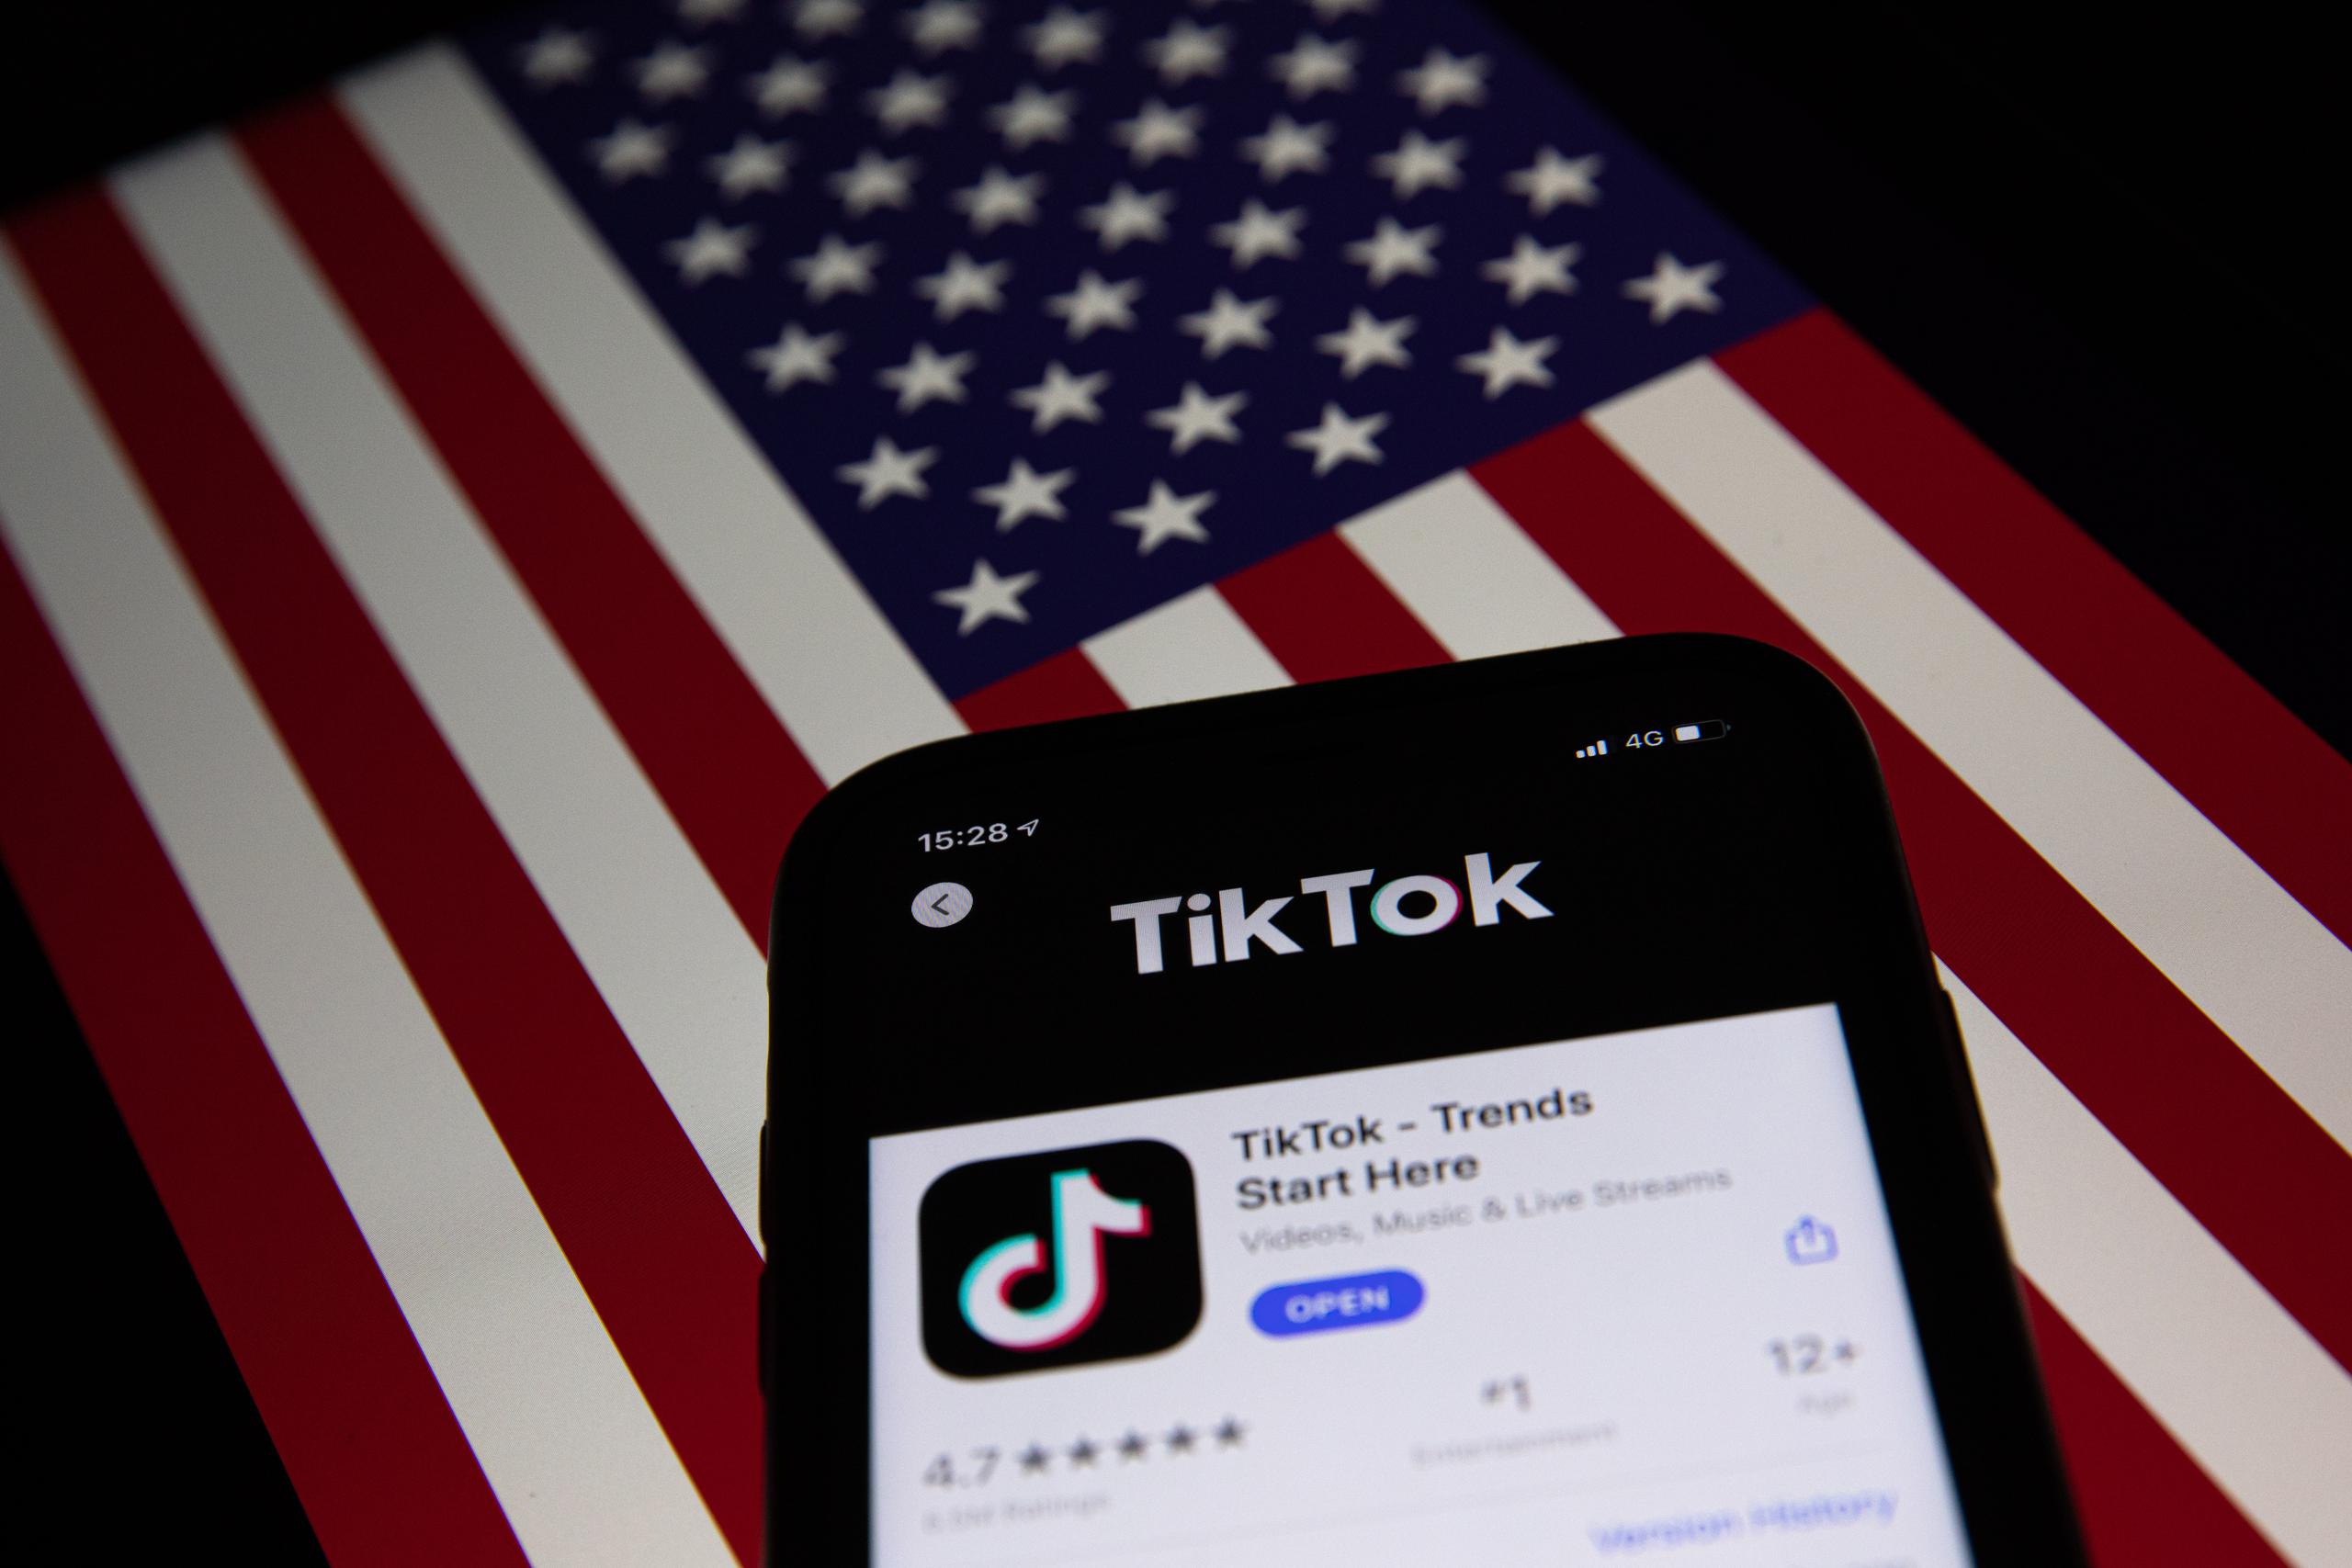 Los abogados de TikTok negaron que la compañía comparta datos con las autoridades chinas y argumentaron que, en realidad, el objetivo de Trump es restringir la libertad de expresión.